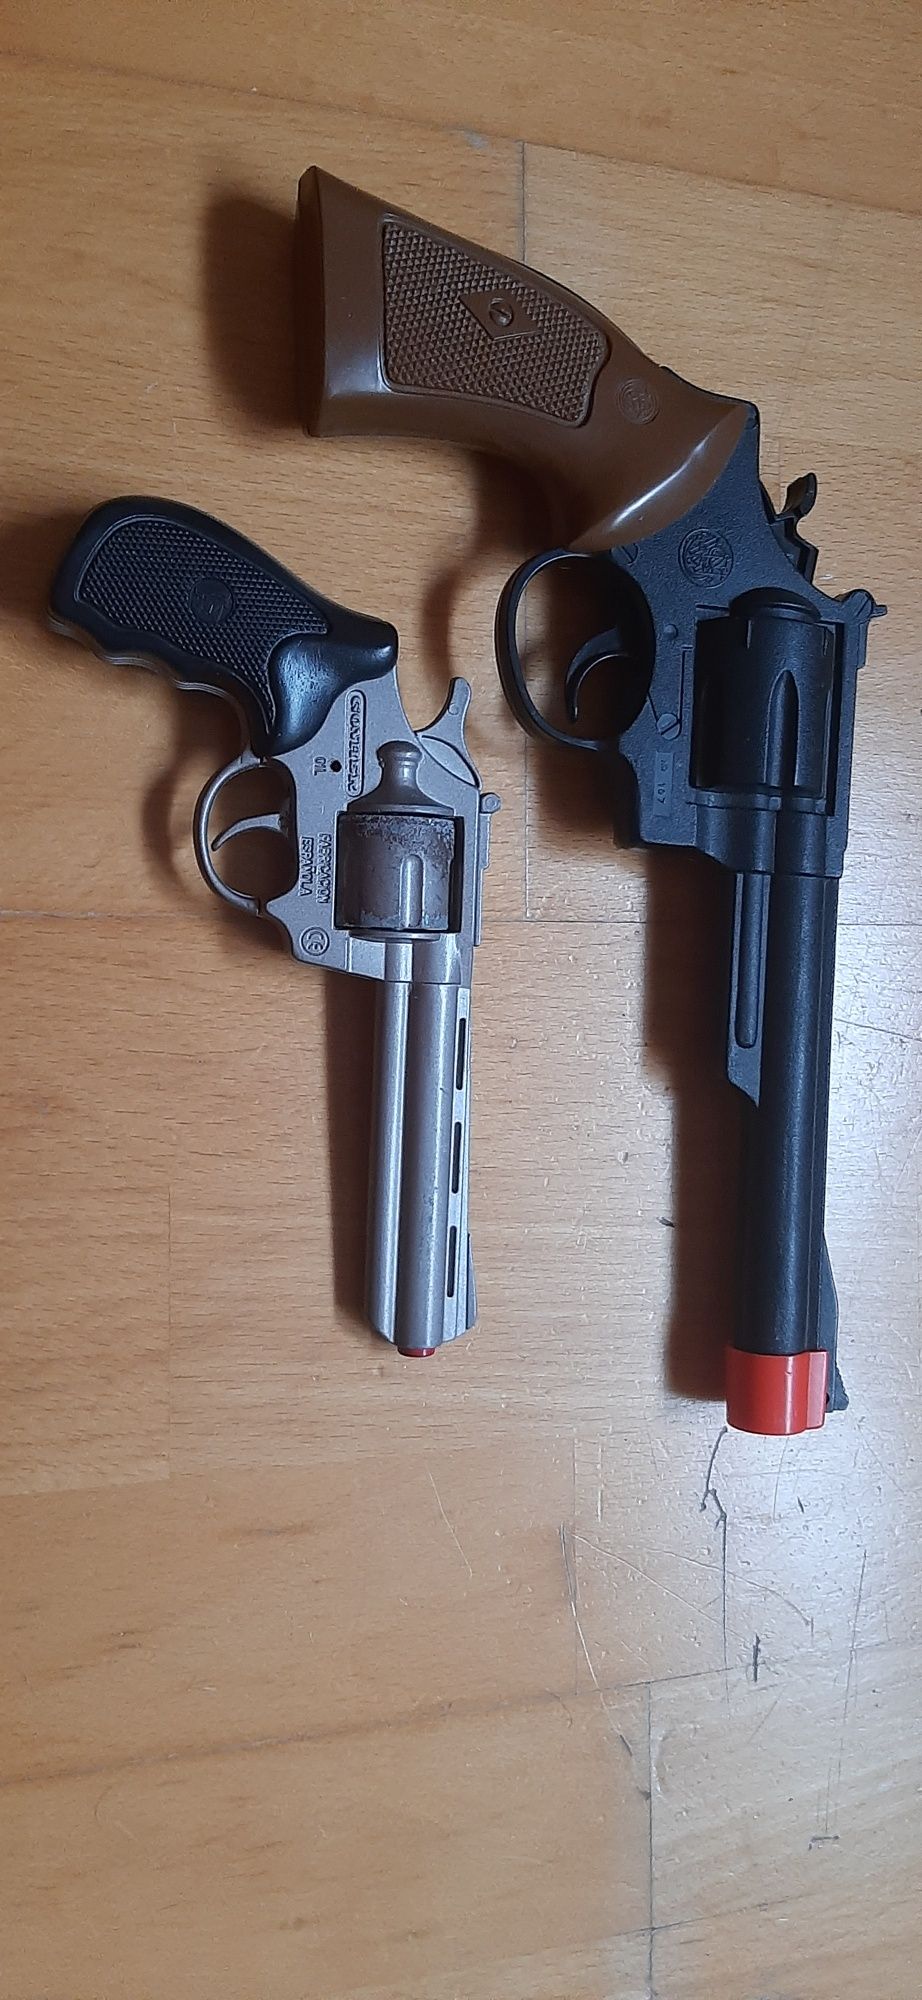 2 pistolas/armas de brincar